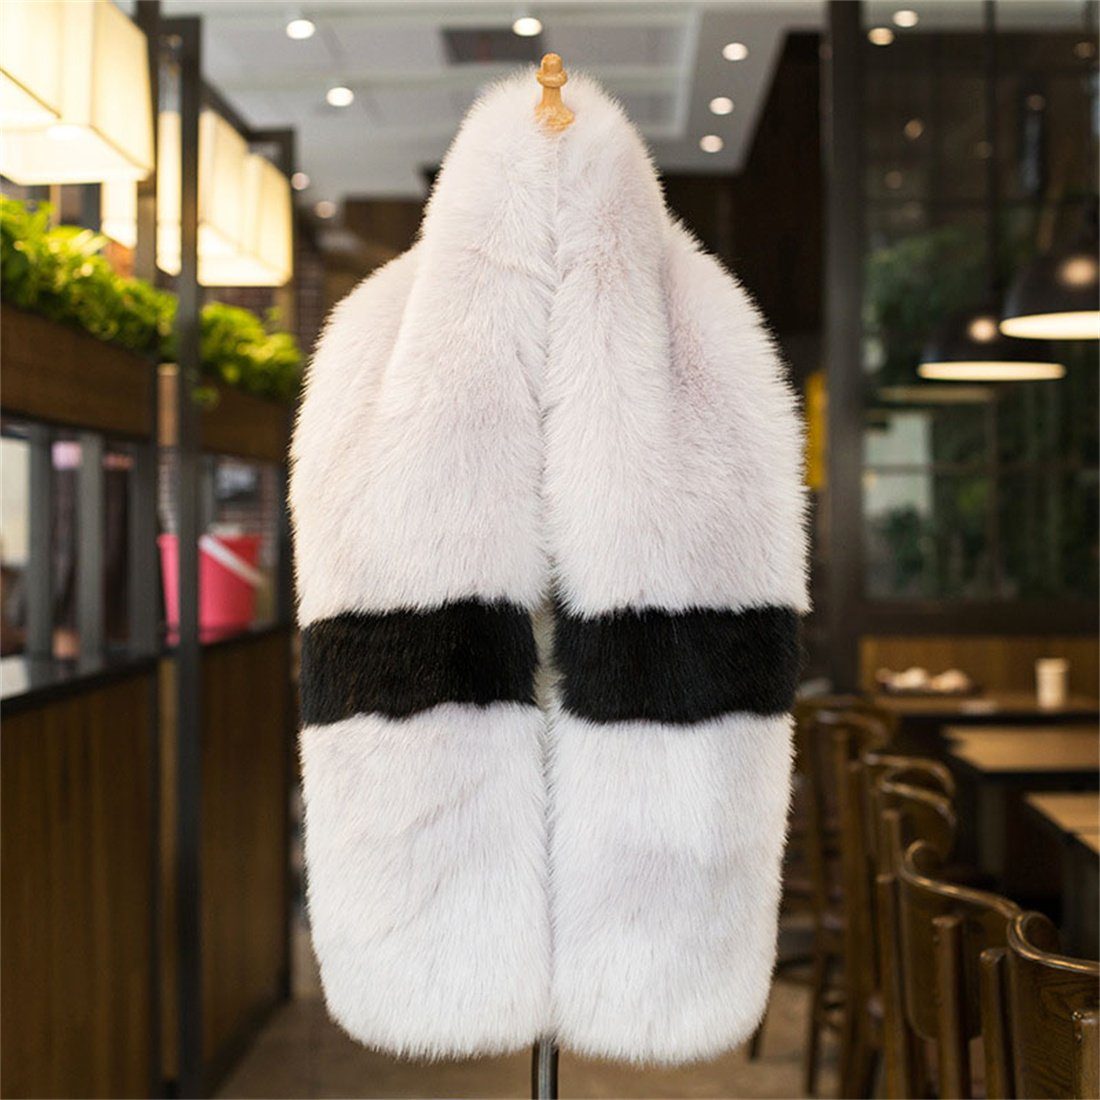 Schwarz Plüsch Schal, verdickt bunten Nachahmung Schal Pelz Winter Modeschal Damen DÖRÖY + Grau warm